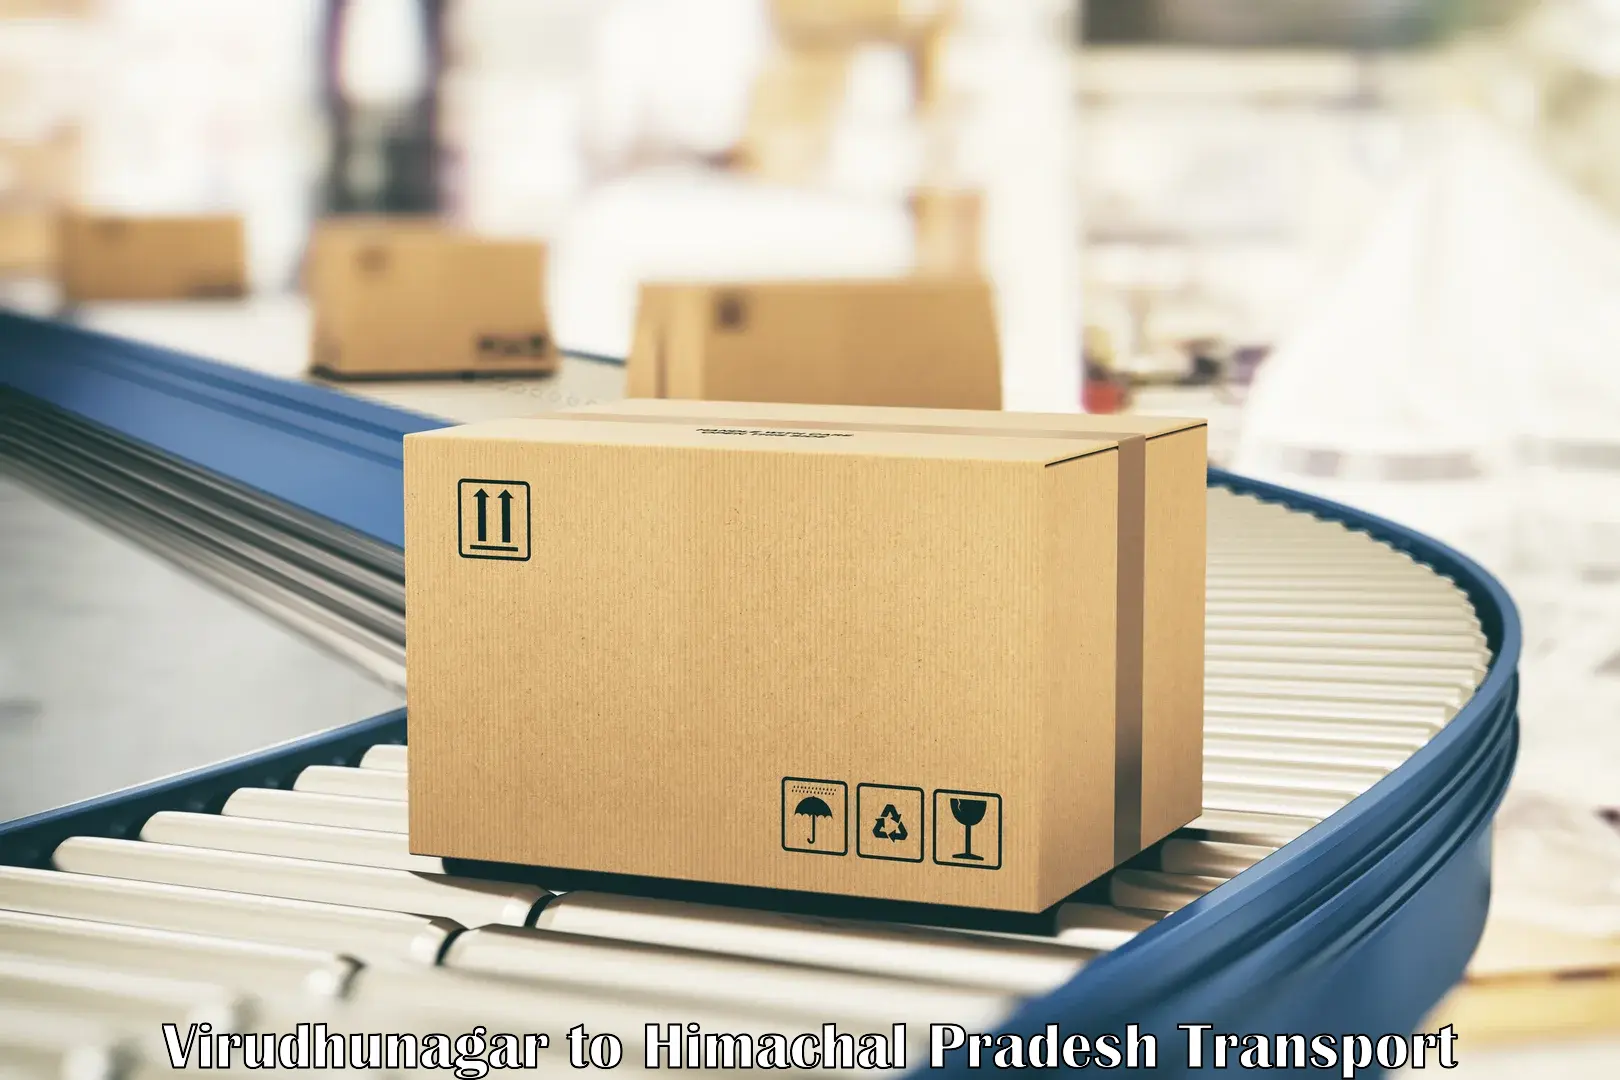 Goods delivery service Virudhunagar to Sandhol